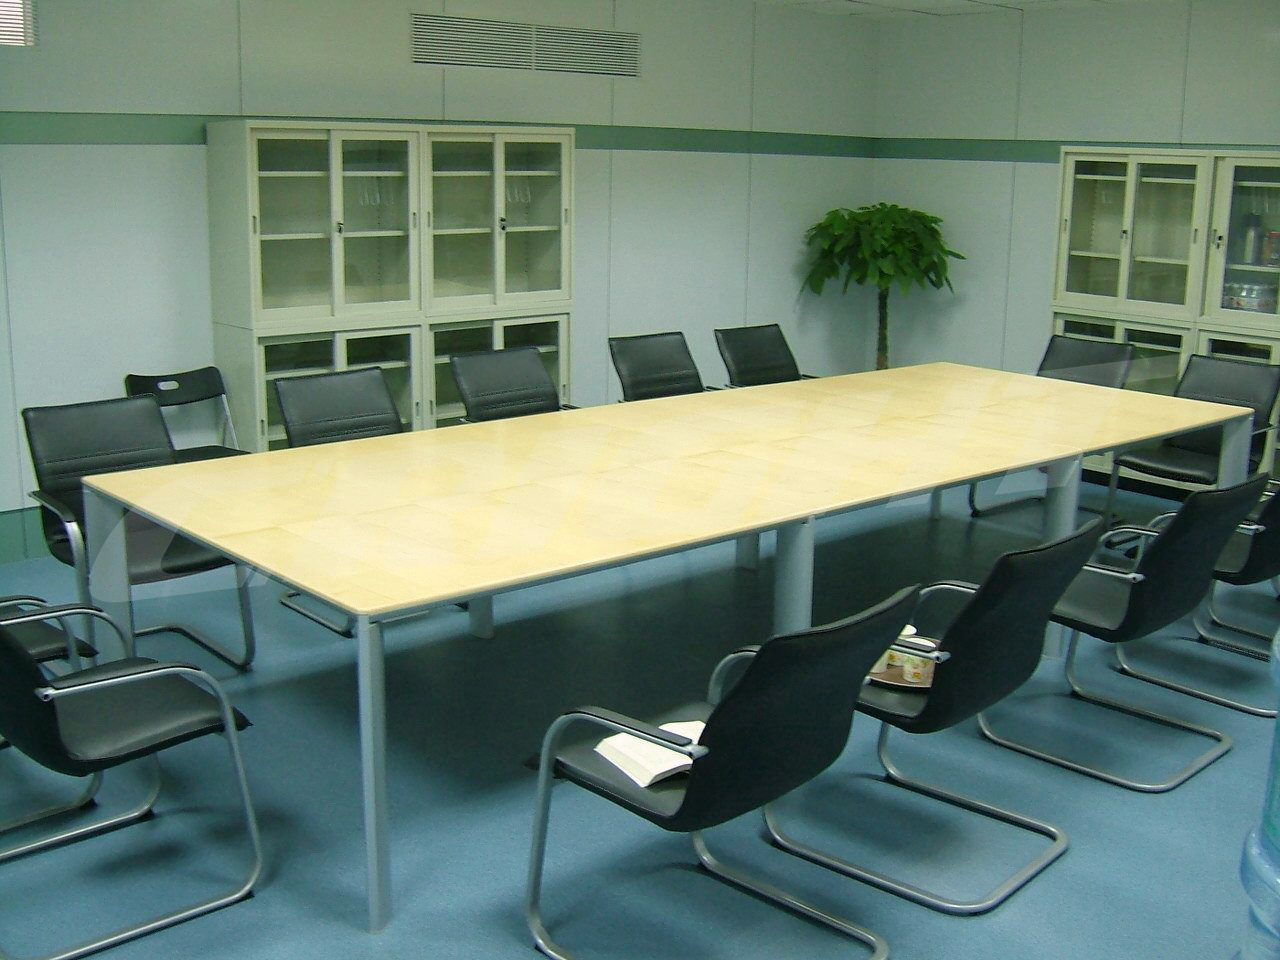 广州办公家具实木会议桌